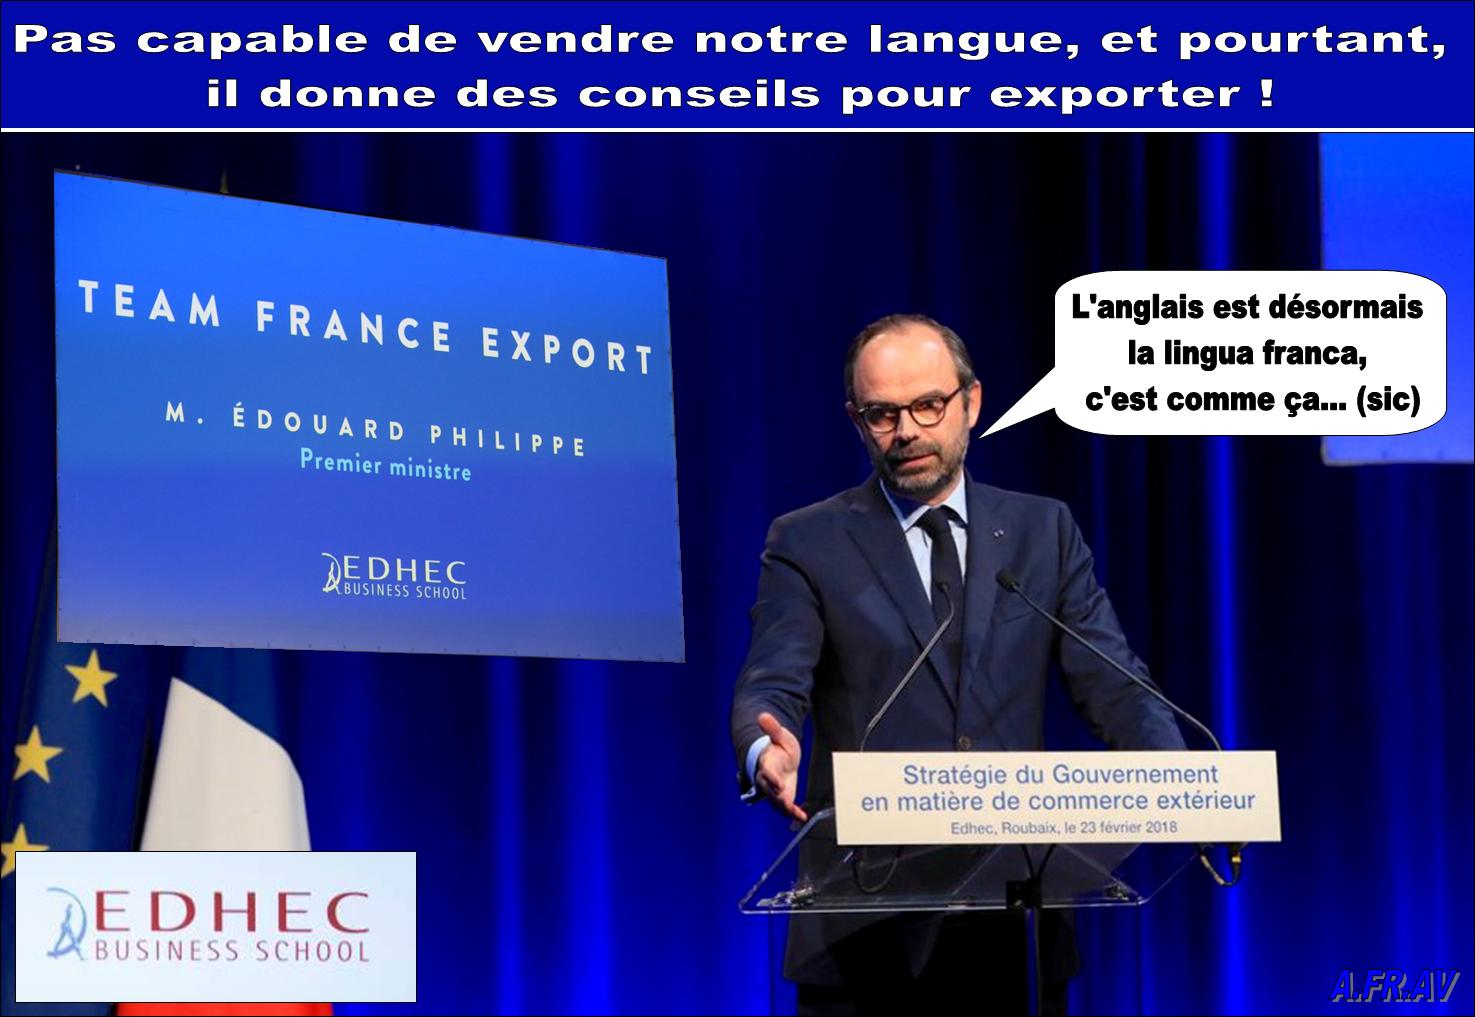 Edouard Philippe abandonne la langue franaise, un capitulard linguistique